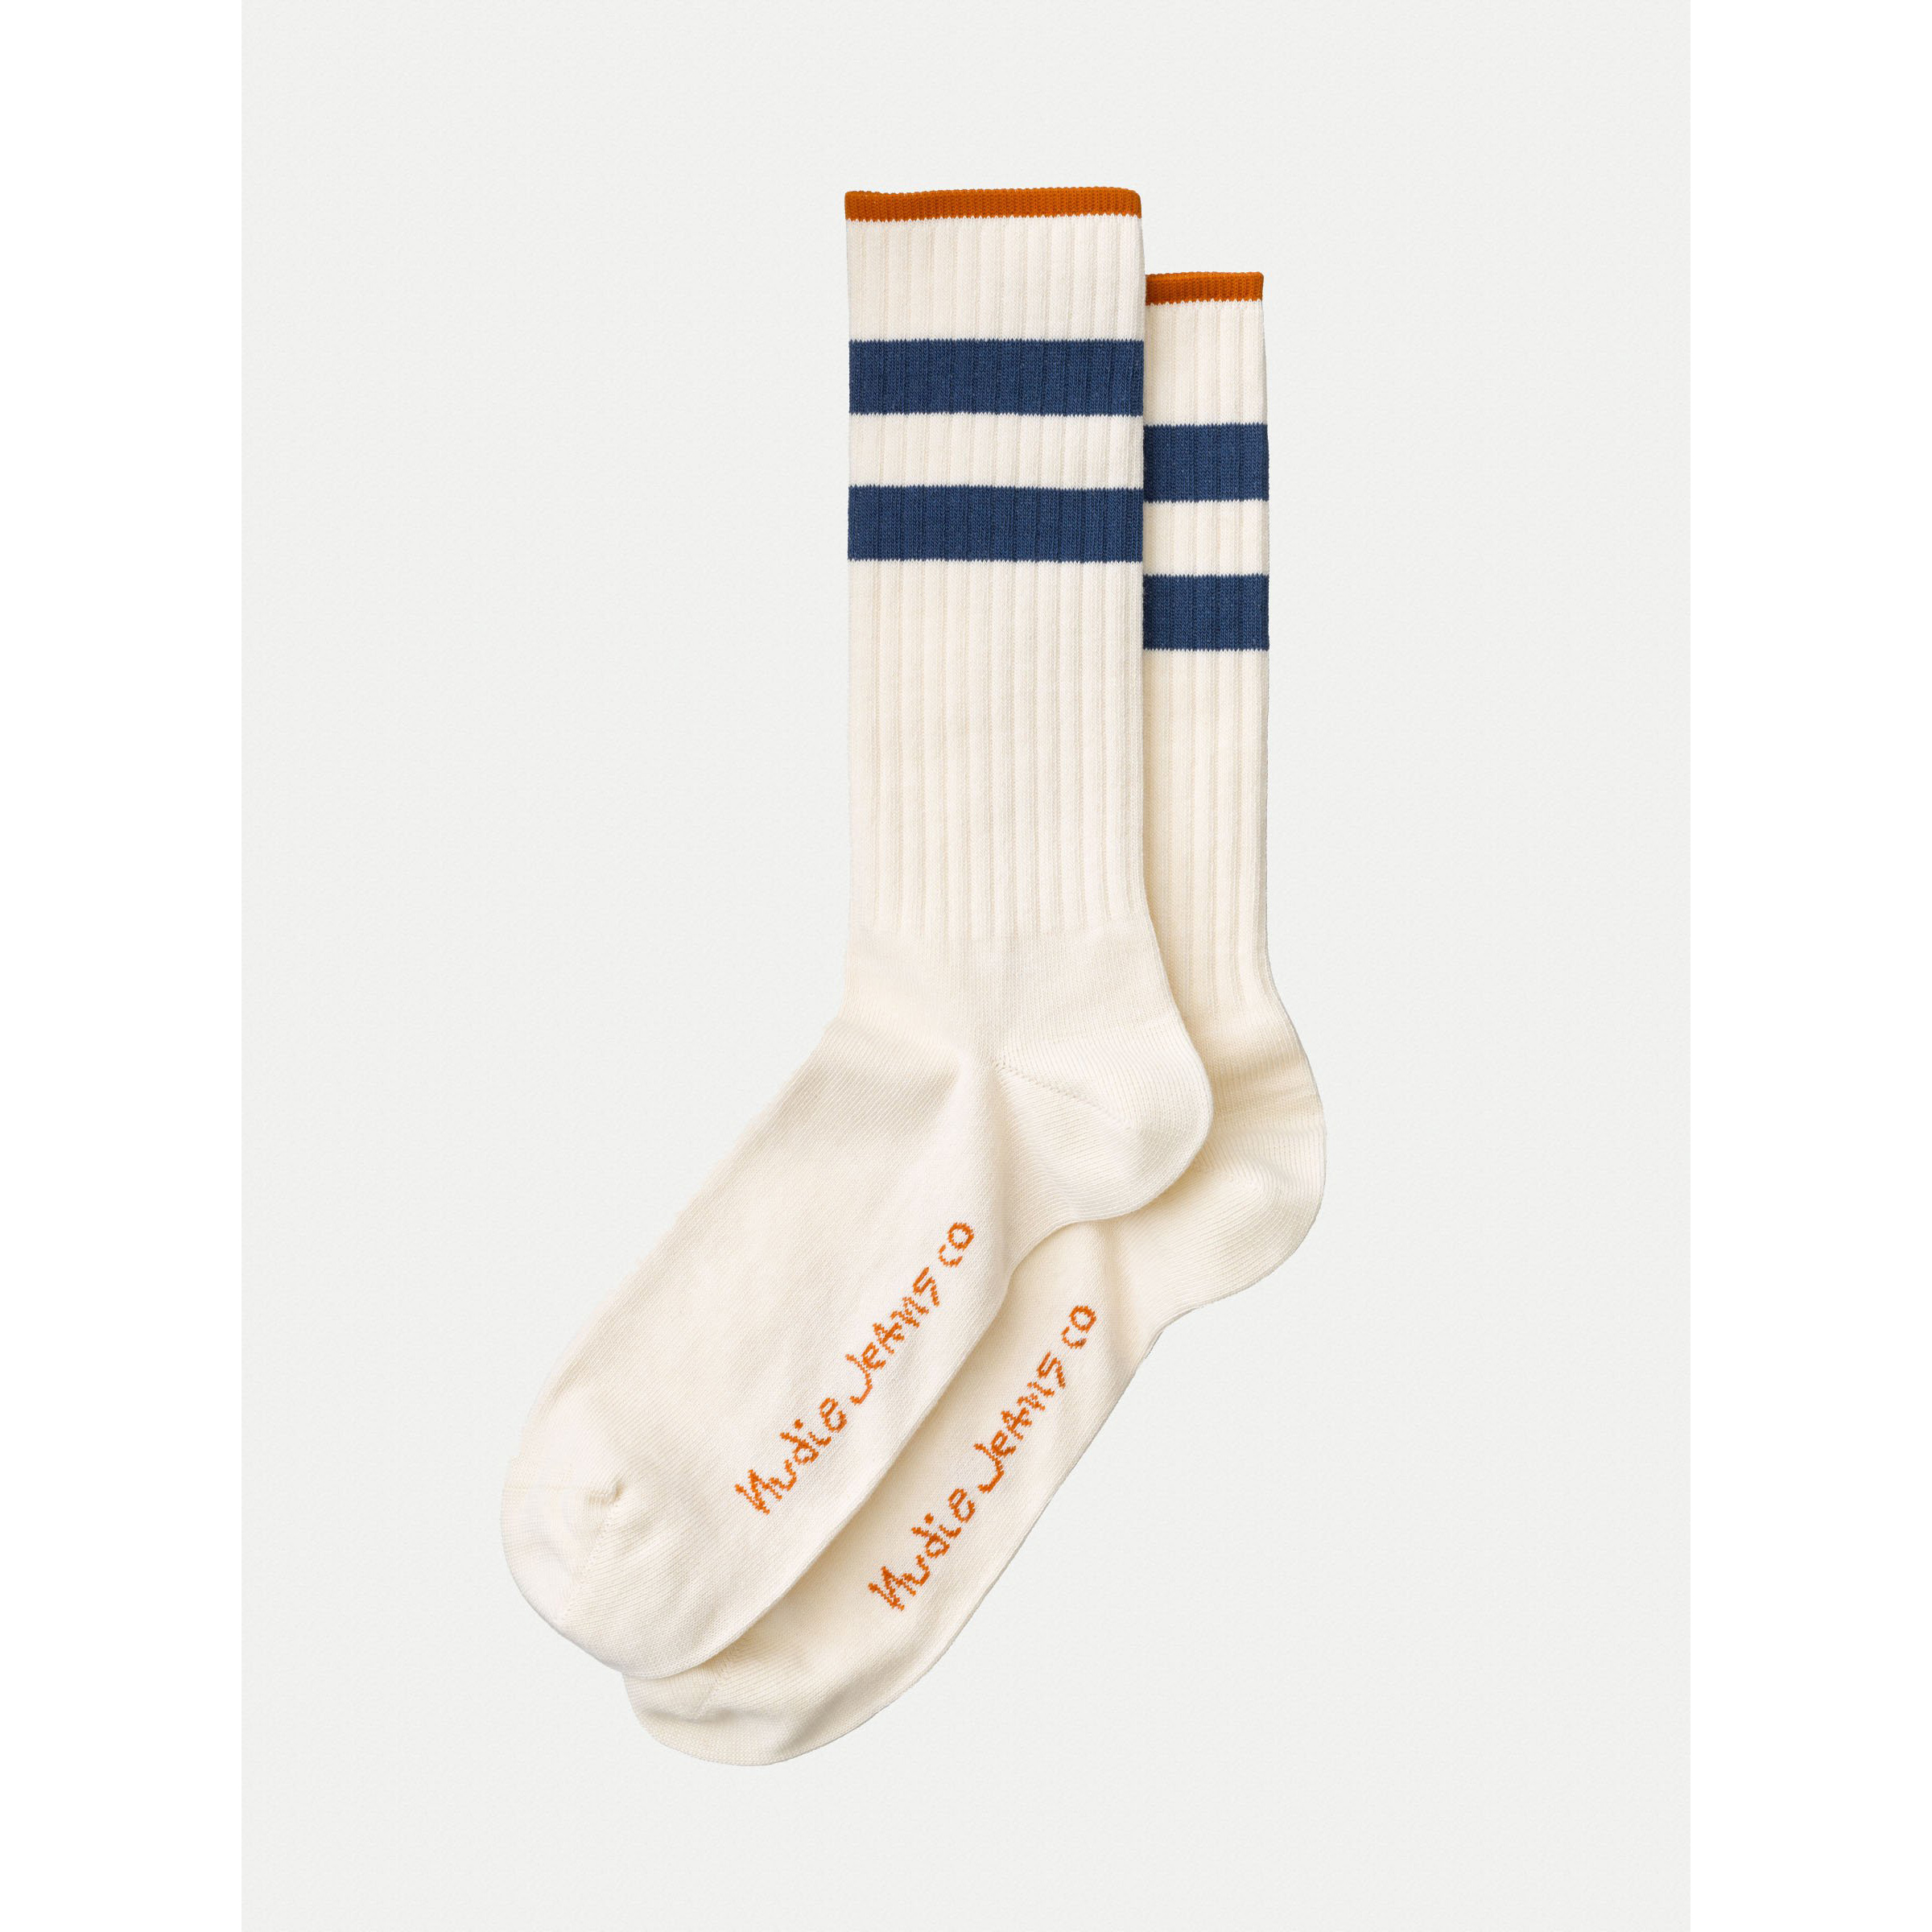 Nudie Jeans Co. Amundsson Sport Socks in White/Navy - Leo Edit